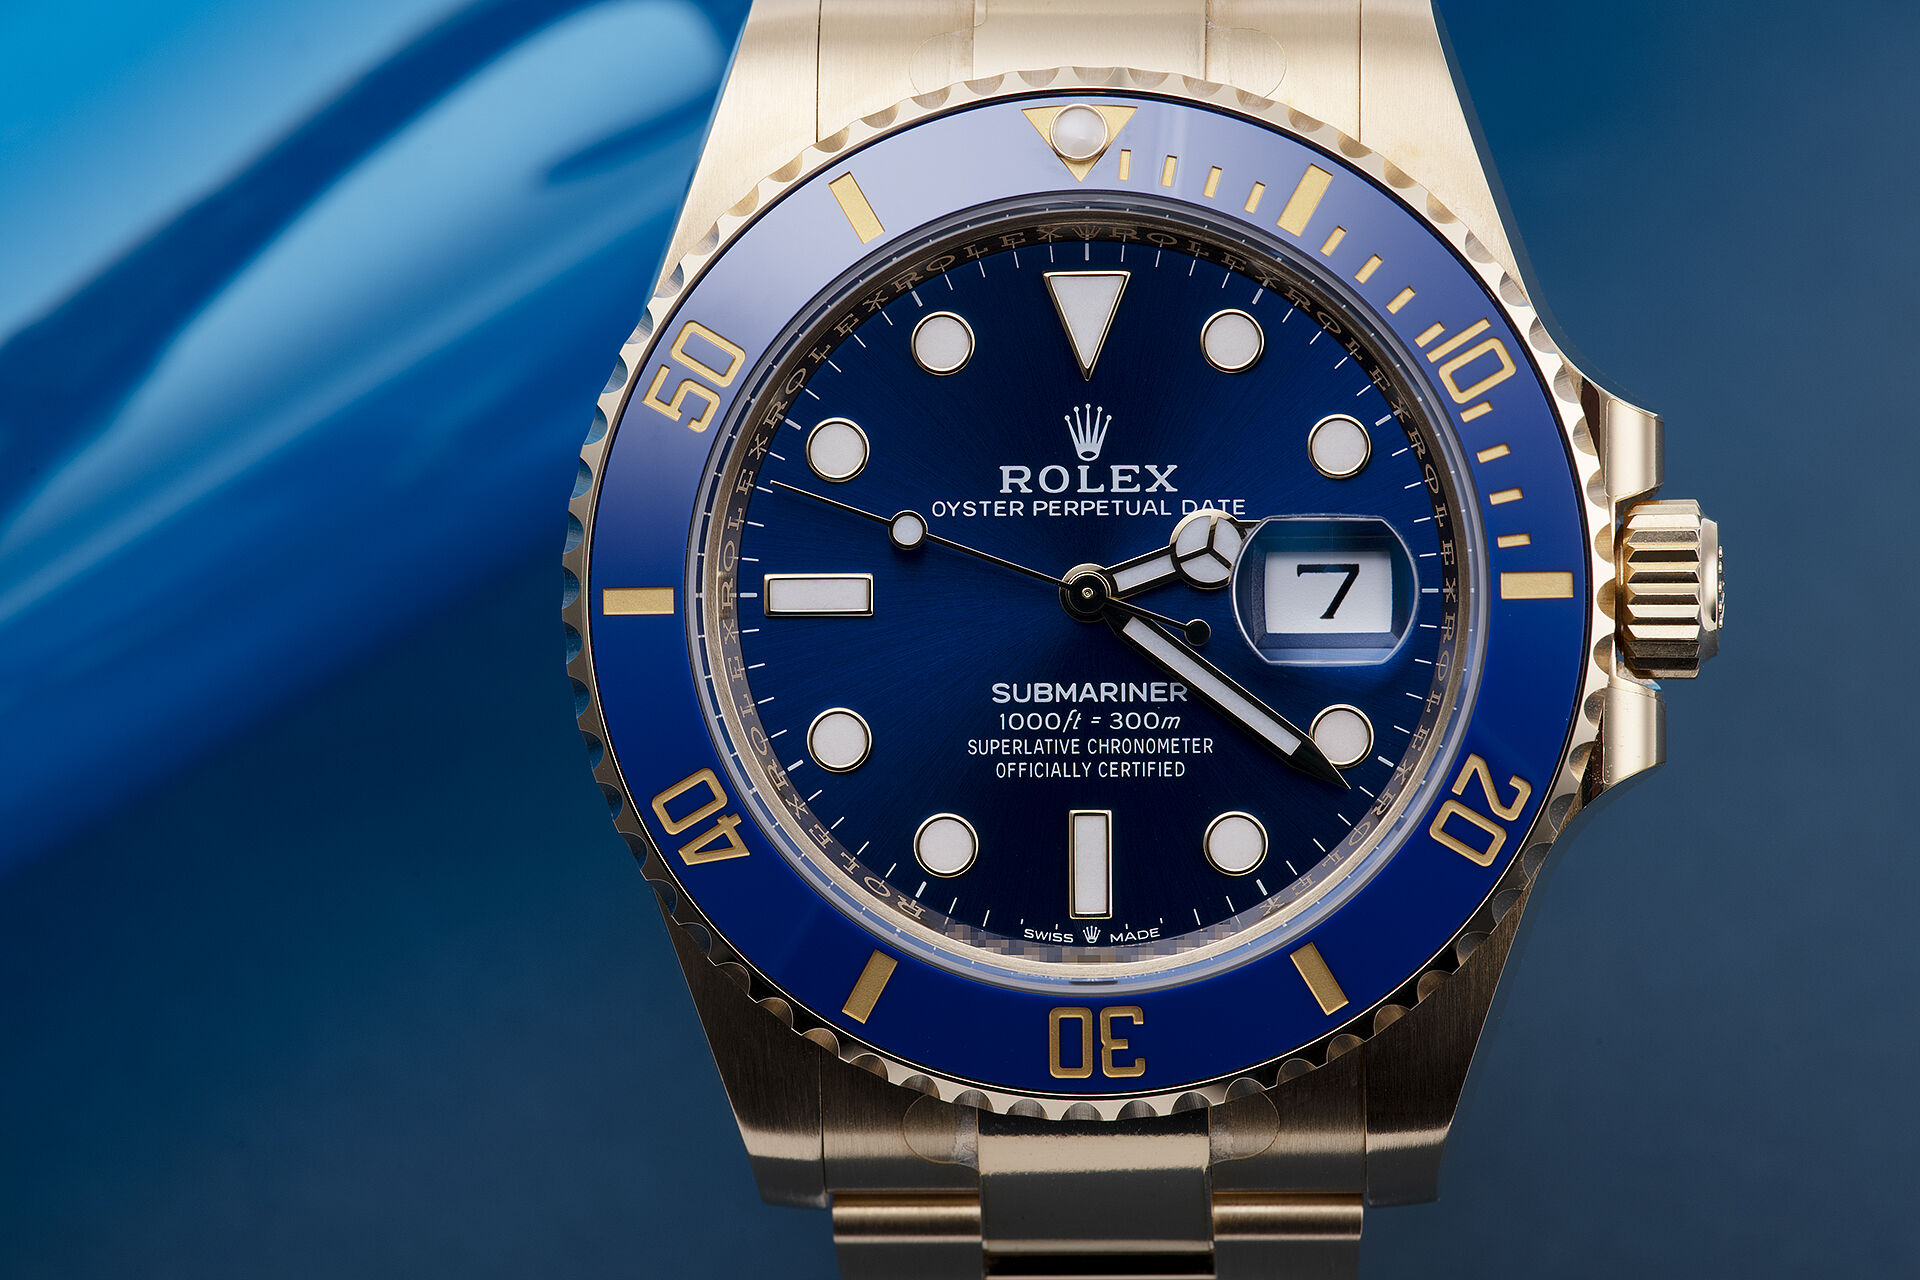 ref 126618LB | Brand New - 5 Year Warranty | Rolex Submariner 